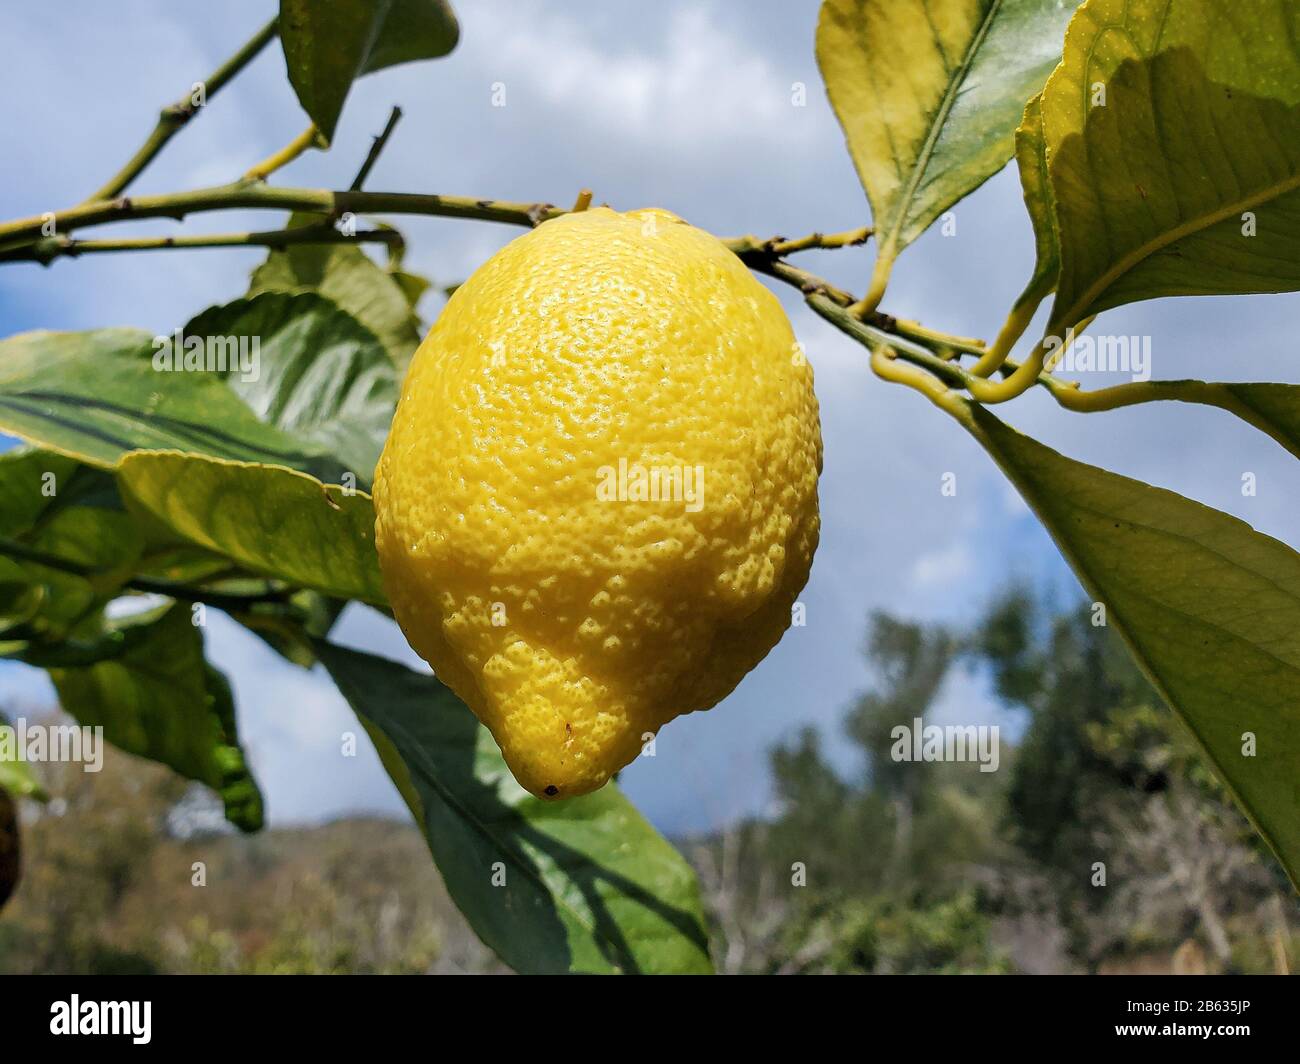 Deliciosos limones italianos genuinos, recogida casera de fruta genuina, productos de invierno Foto de stock